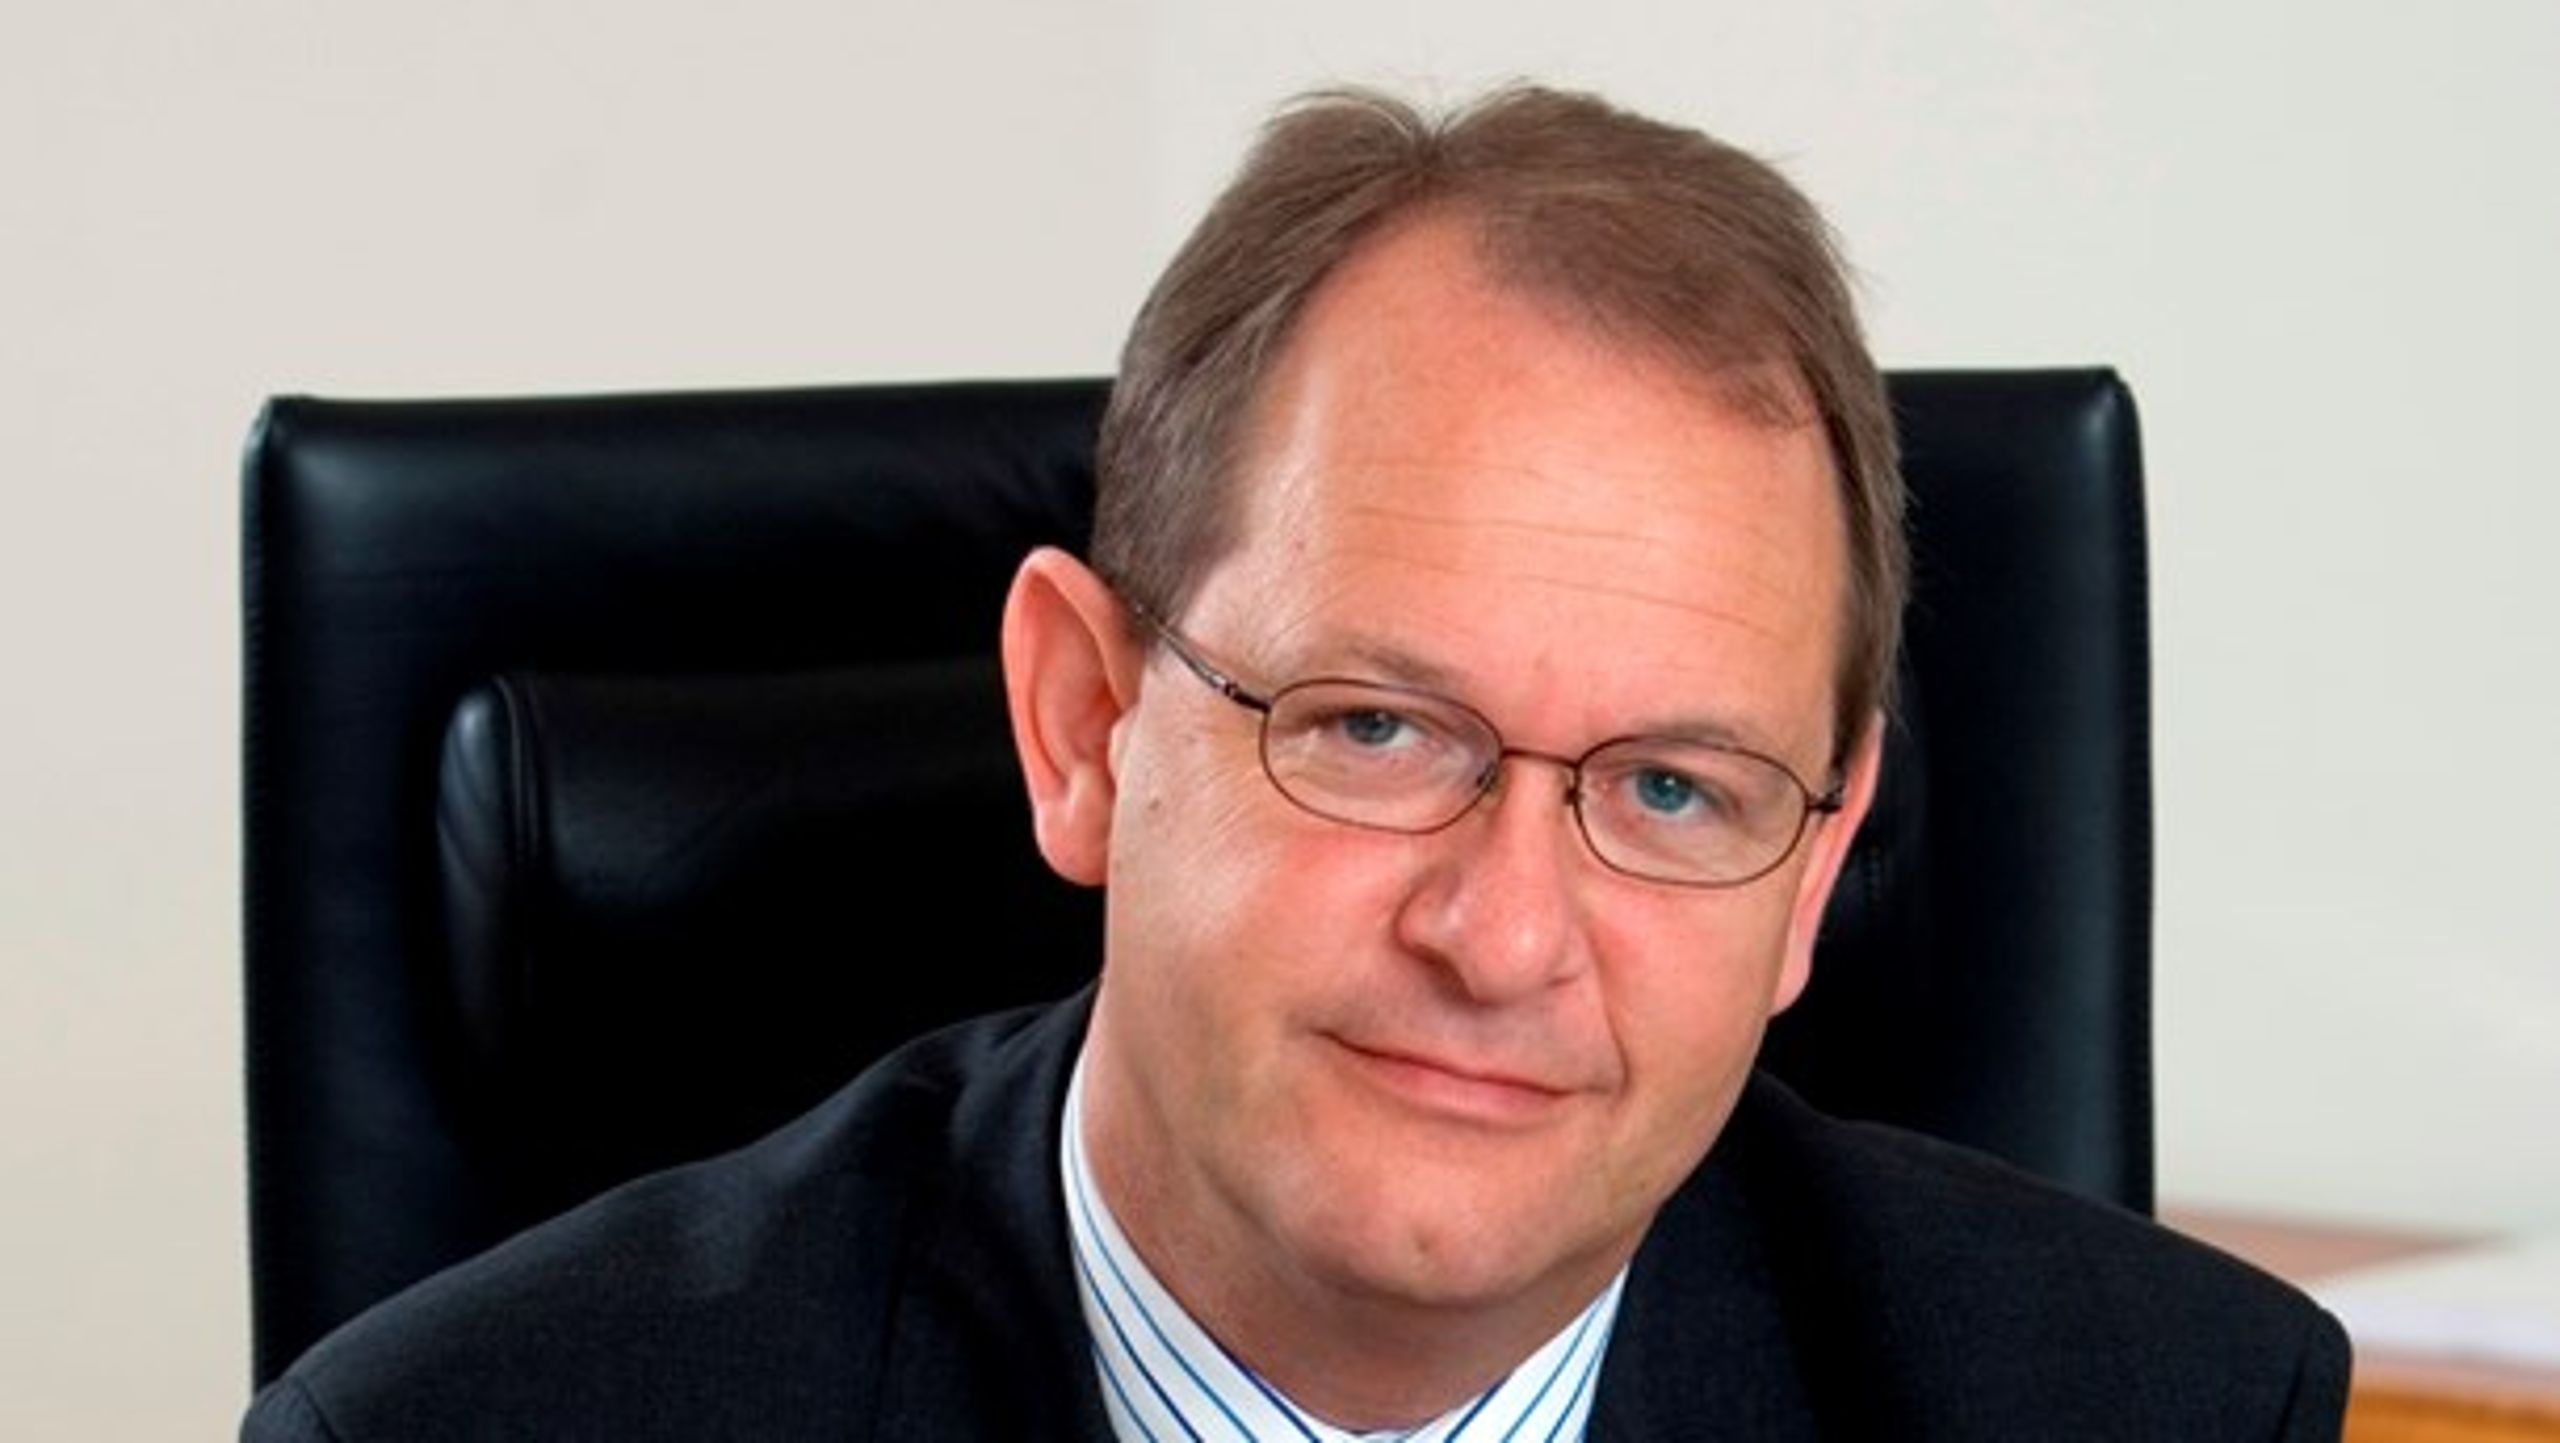 Henrik Bach Mortensen er direktør i Dansk Arbejdsgiverforening og bestyrelsesformand for DIPD, det Danske Institut for Partier og Demokrati.